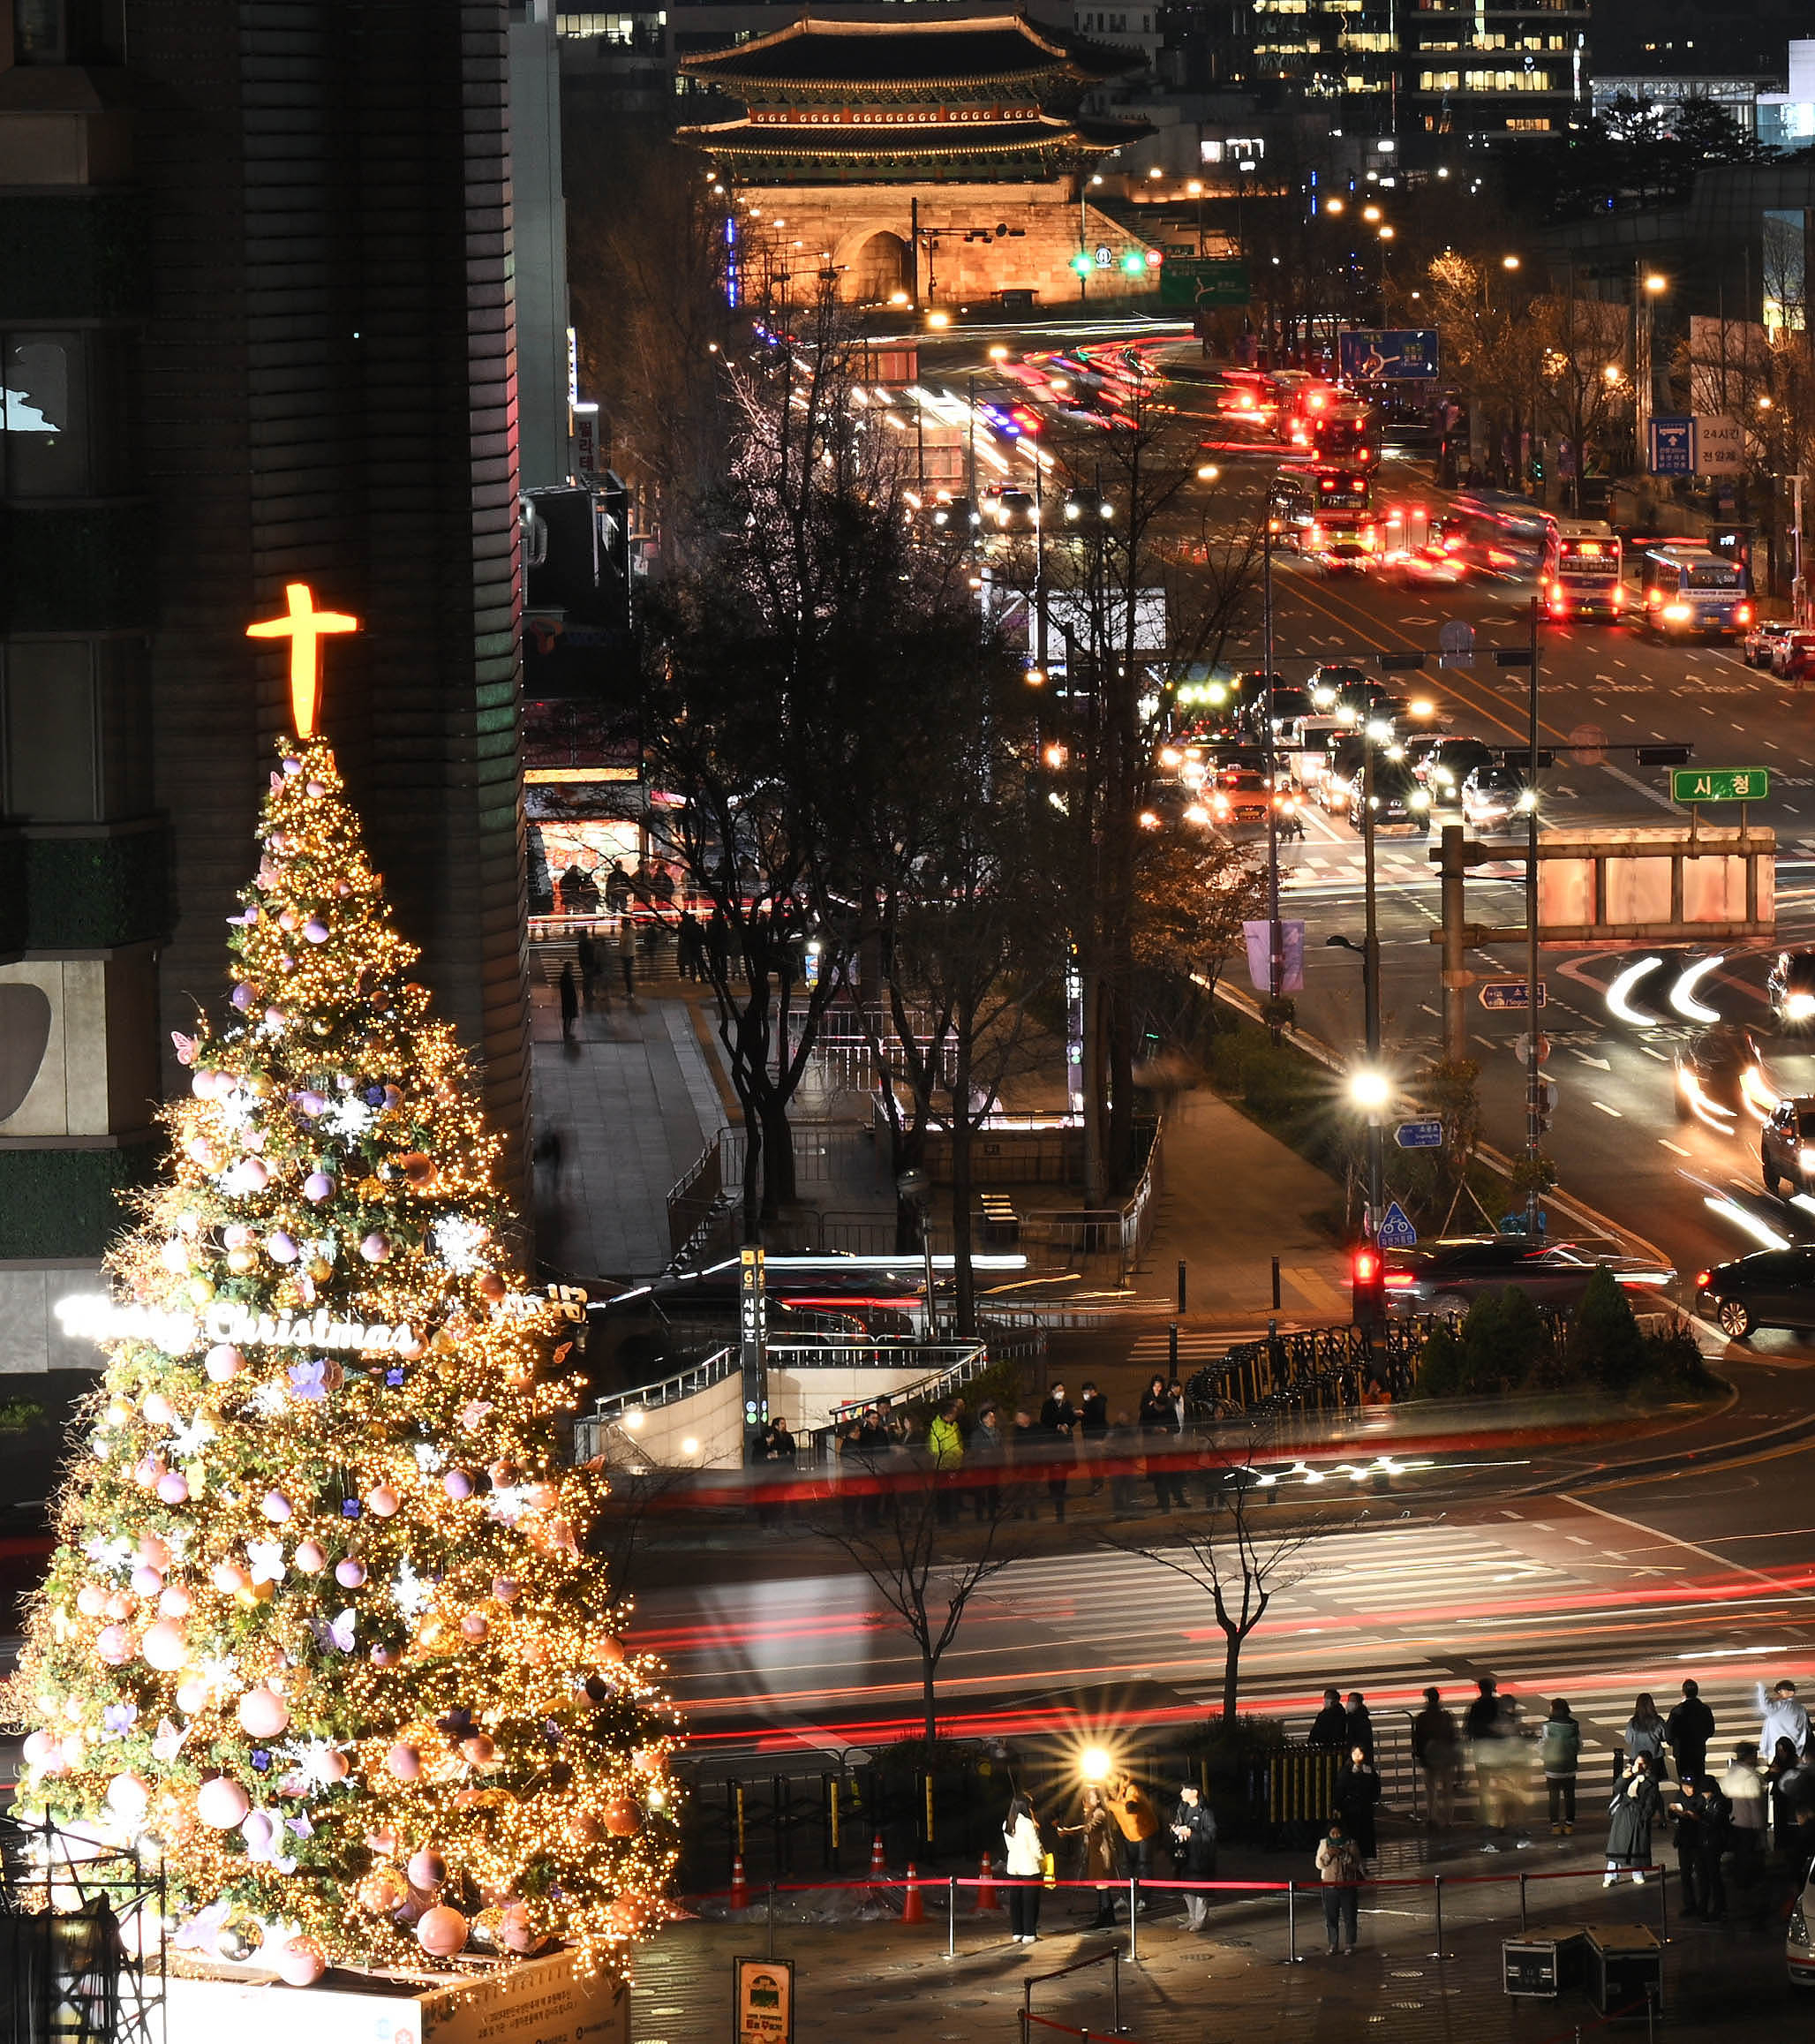 20일 서울 중구 서울광장에 설치된 성탄트리가 점등식에 맞춰 환하게 빛을 밝히고 있다.  홍윤기 기자